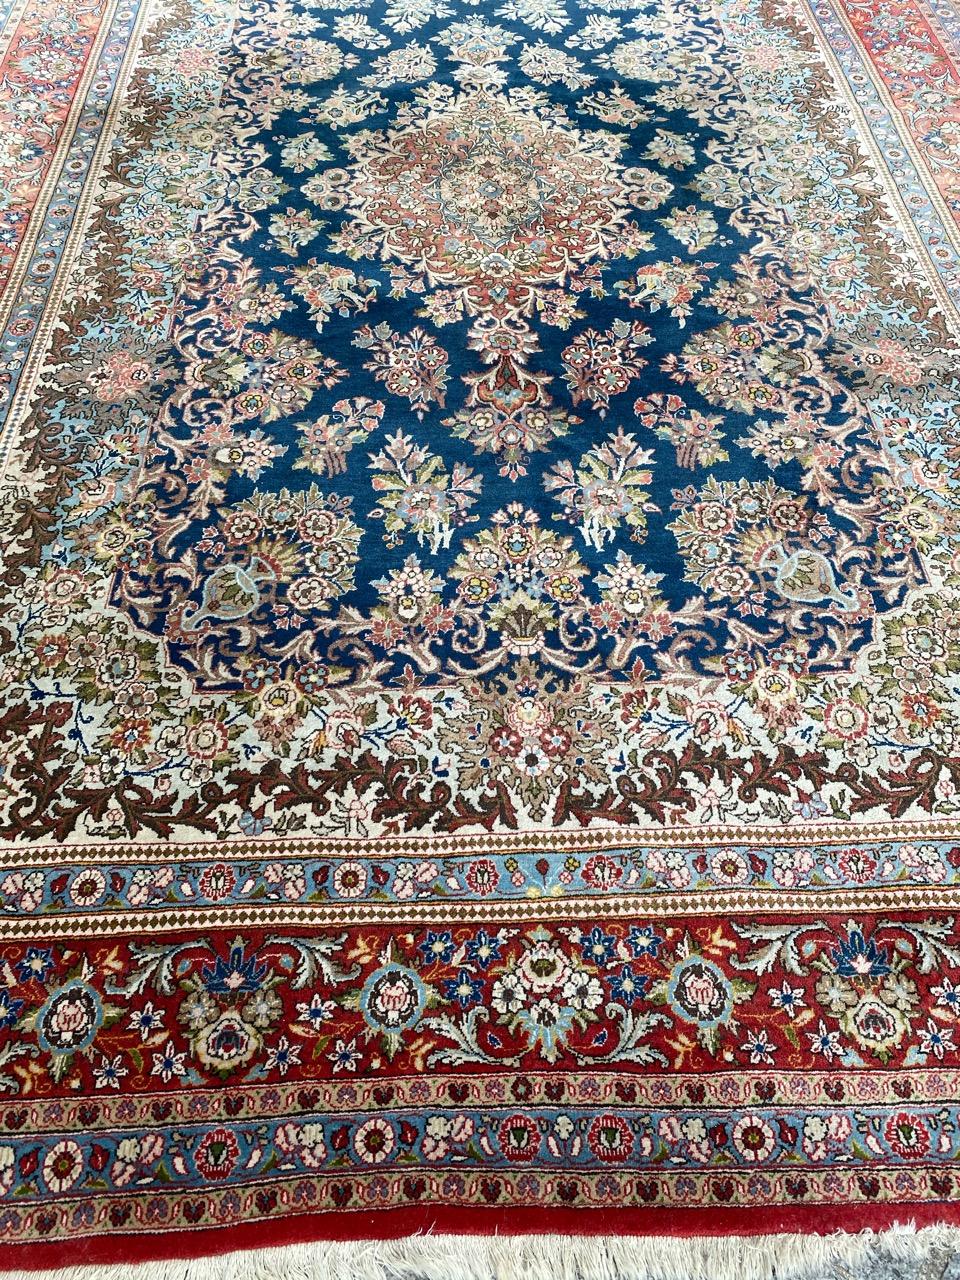 Hübscher feiner Qom-Teppich aus der Mitte des Jahrhunderts mit schönem Blumenmuster und schönen Farben, vollständig und fein handgeknüpft mit Wollsamt auf Baumwollgrund.

✨✨✨
